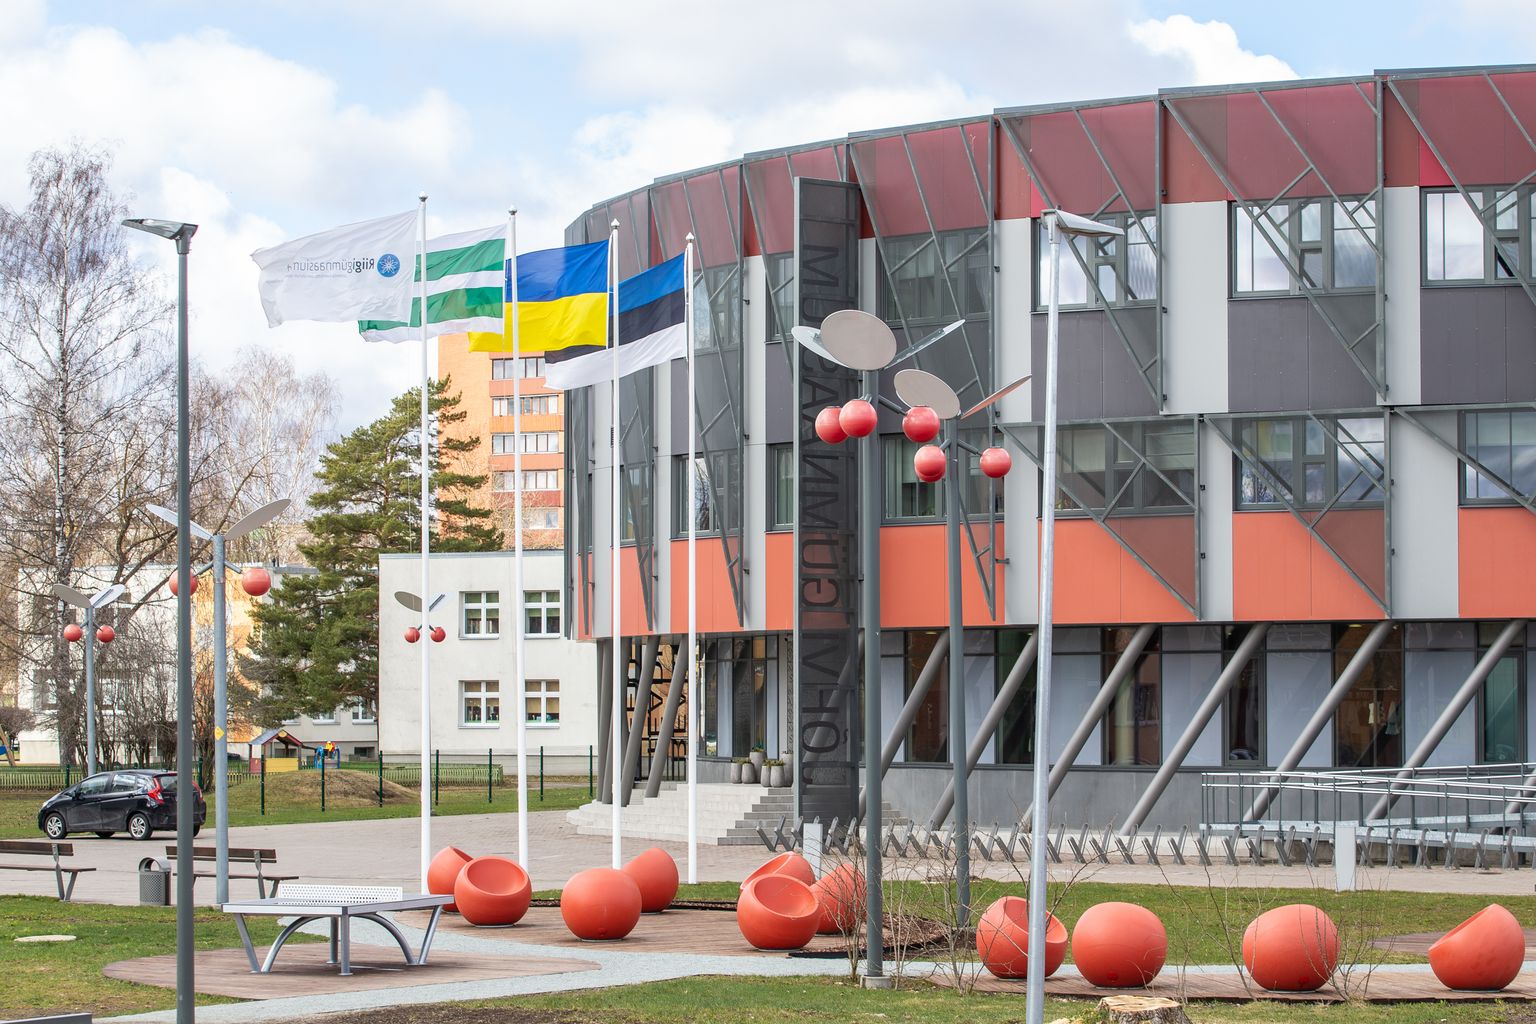 Йыхвиская гимназия готова перейти на эстоноязычное обучение. Директор Татьяна Айт сказала, что изучение математики на эстонском языке больше не пугает учеников.